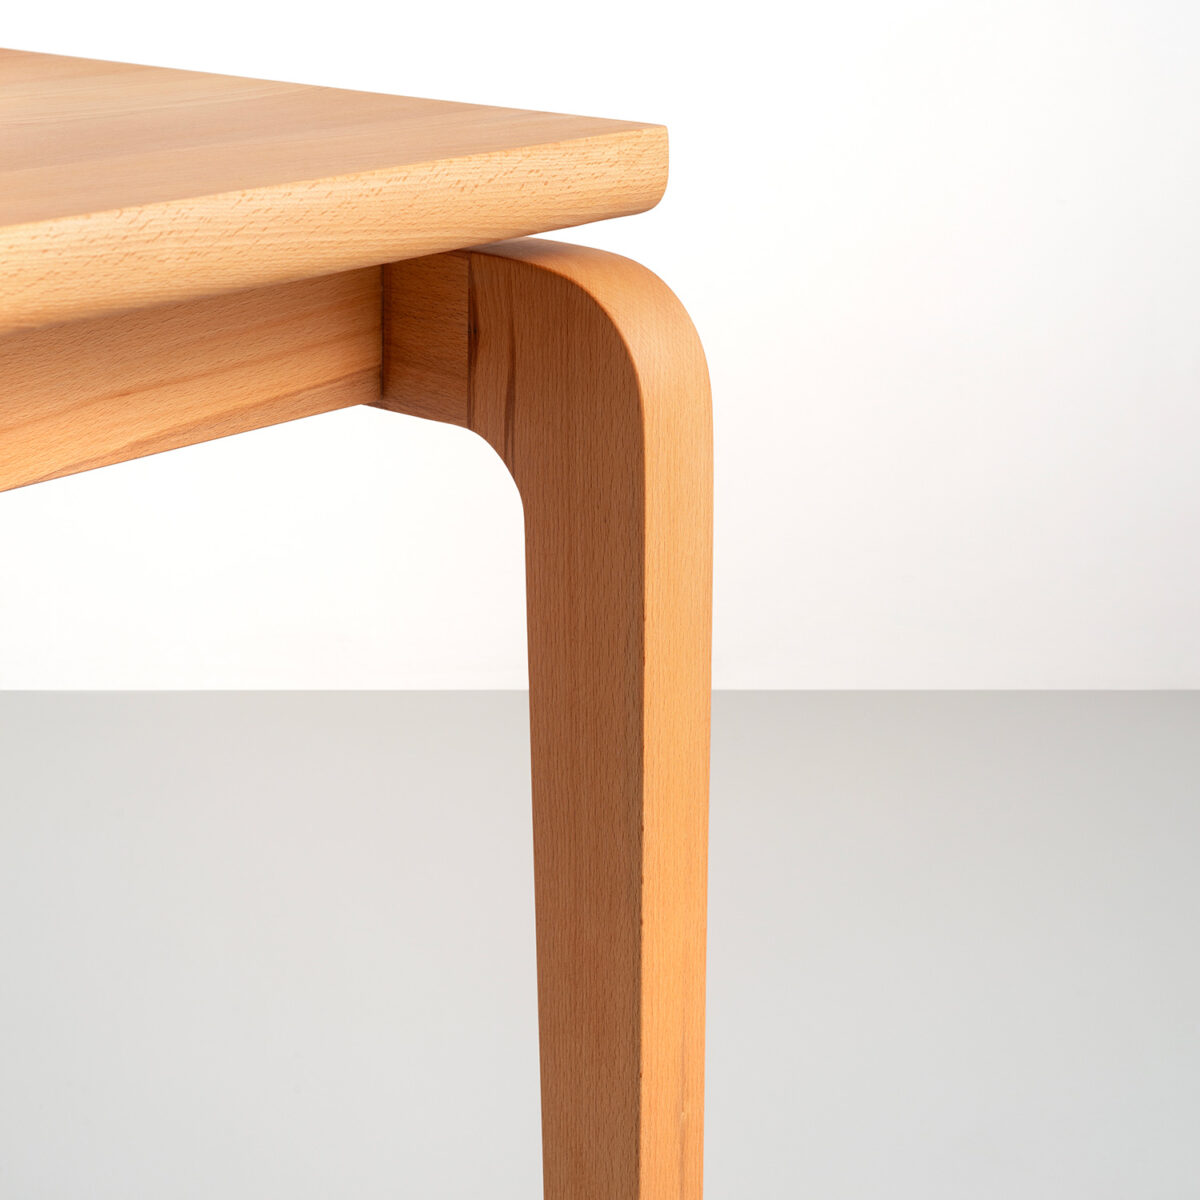 اتصال پایه میز ناهارخوری به چوب زیرین صفحه است